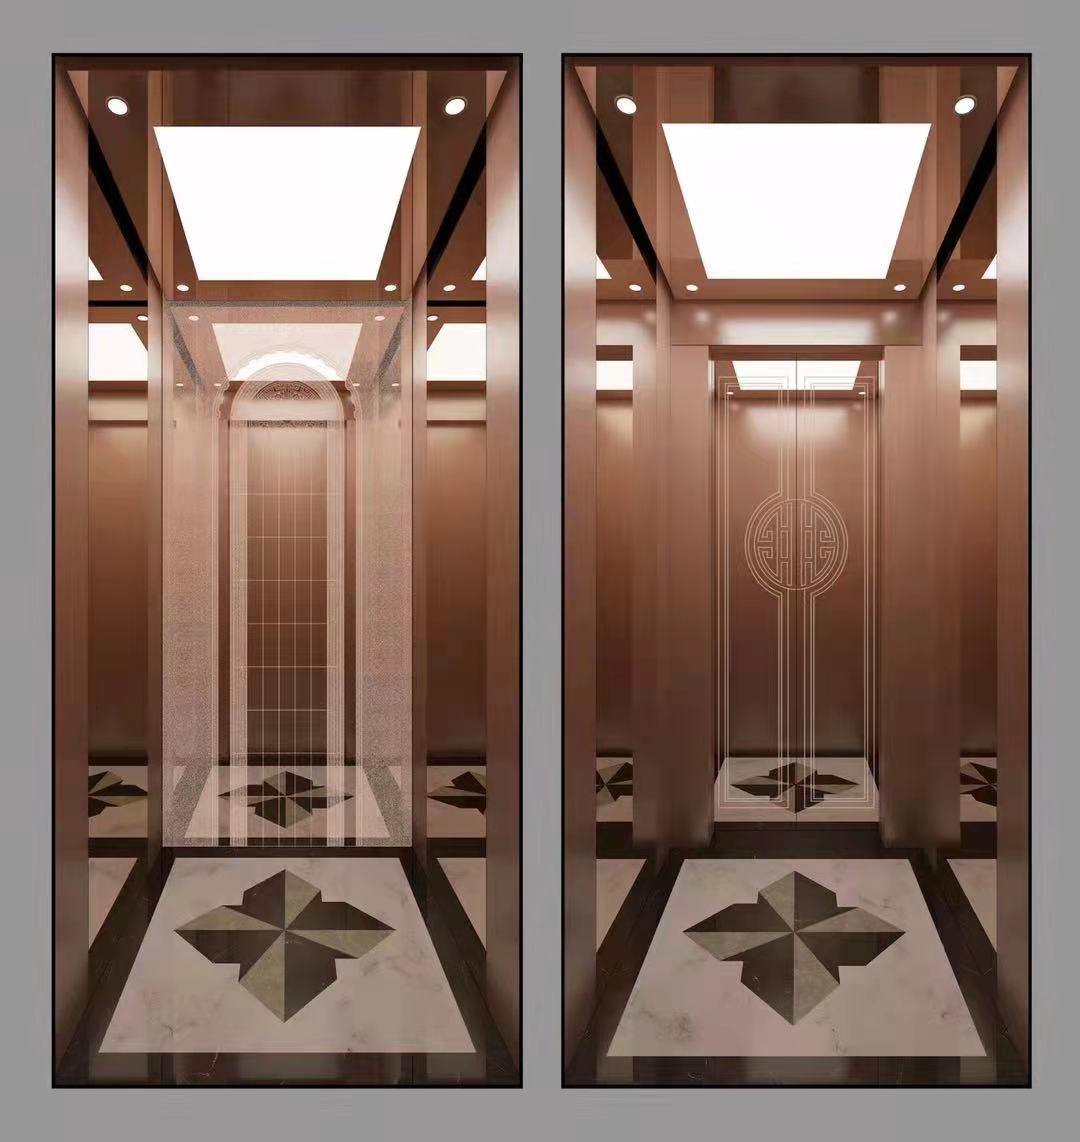 電梯裝飾裝潢電梯裝修電梯轎廂裝潢石家莊電梯裝飾工廠